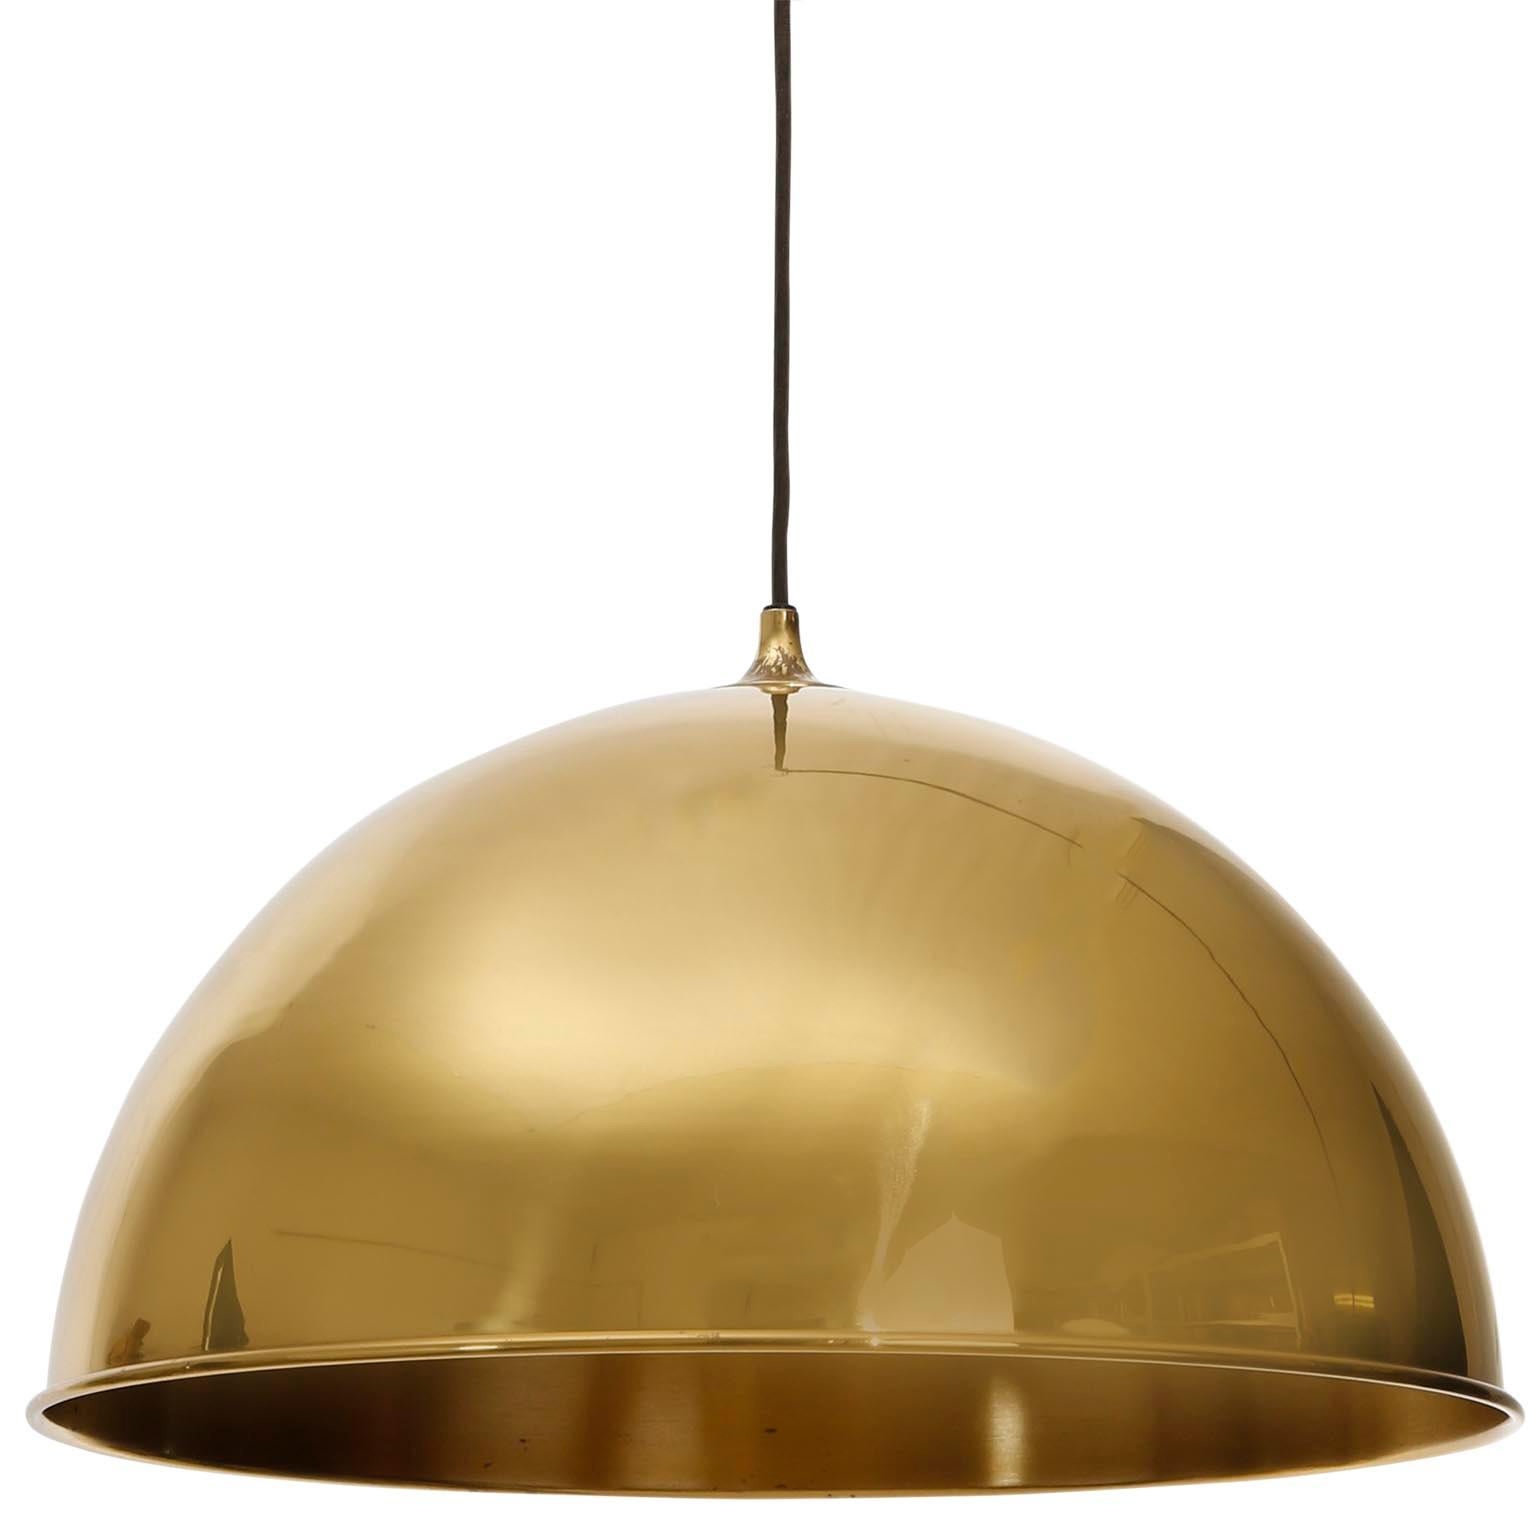 German Florian Schulz Dome Pendant Light, Brass Counterweight Counter Balance, 1970